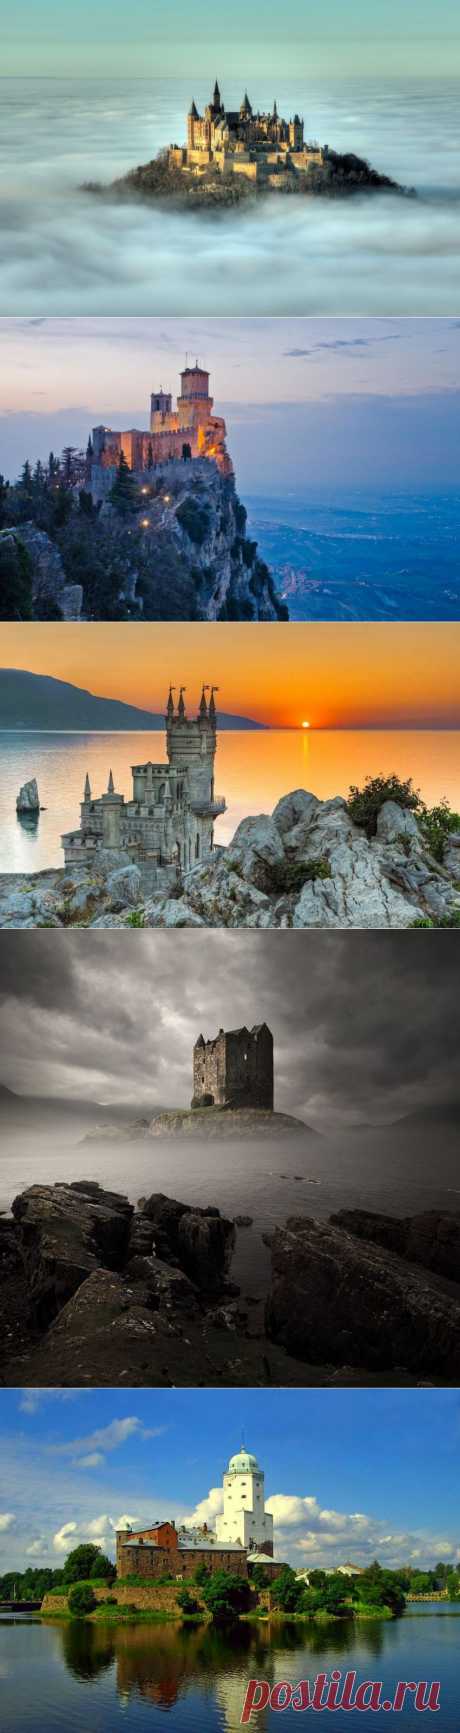 20 самых знаменитых замков в которых хочется побывать | Мой отпуск - делимся впечатлениями!